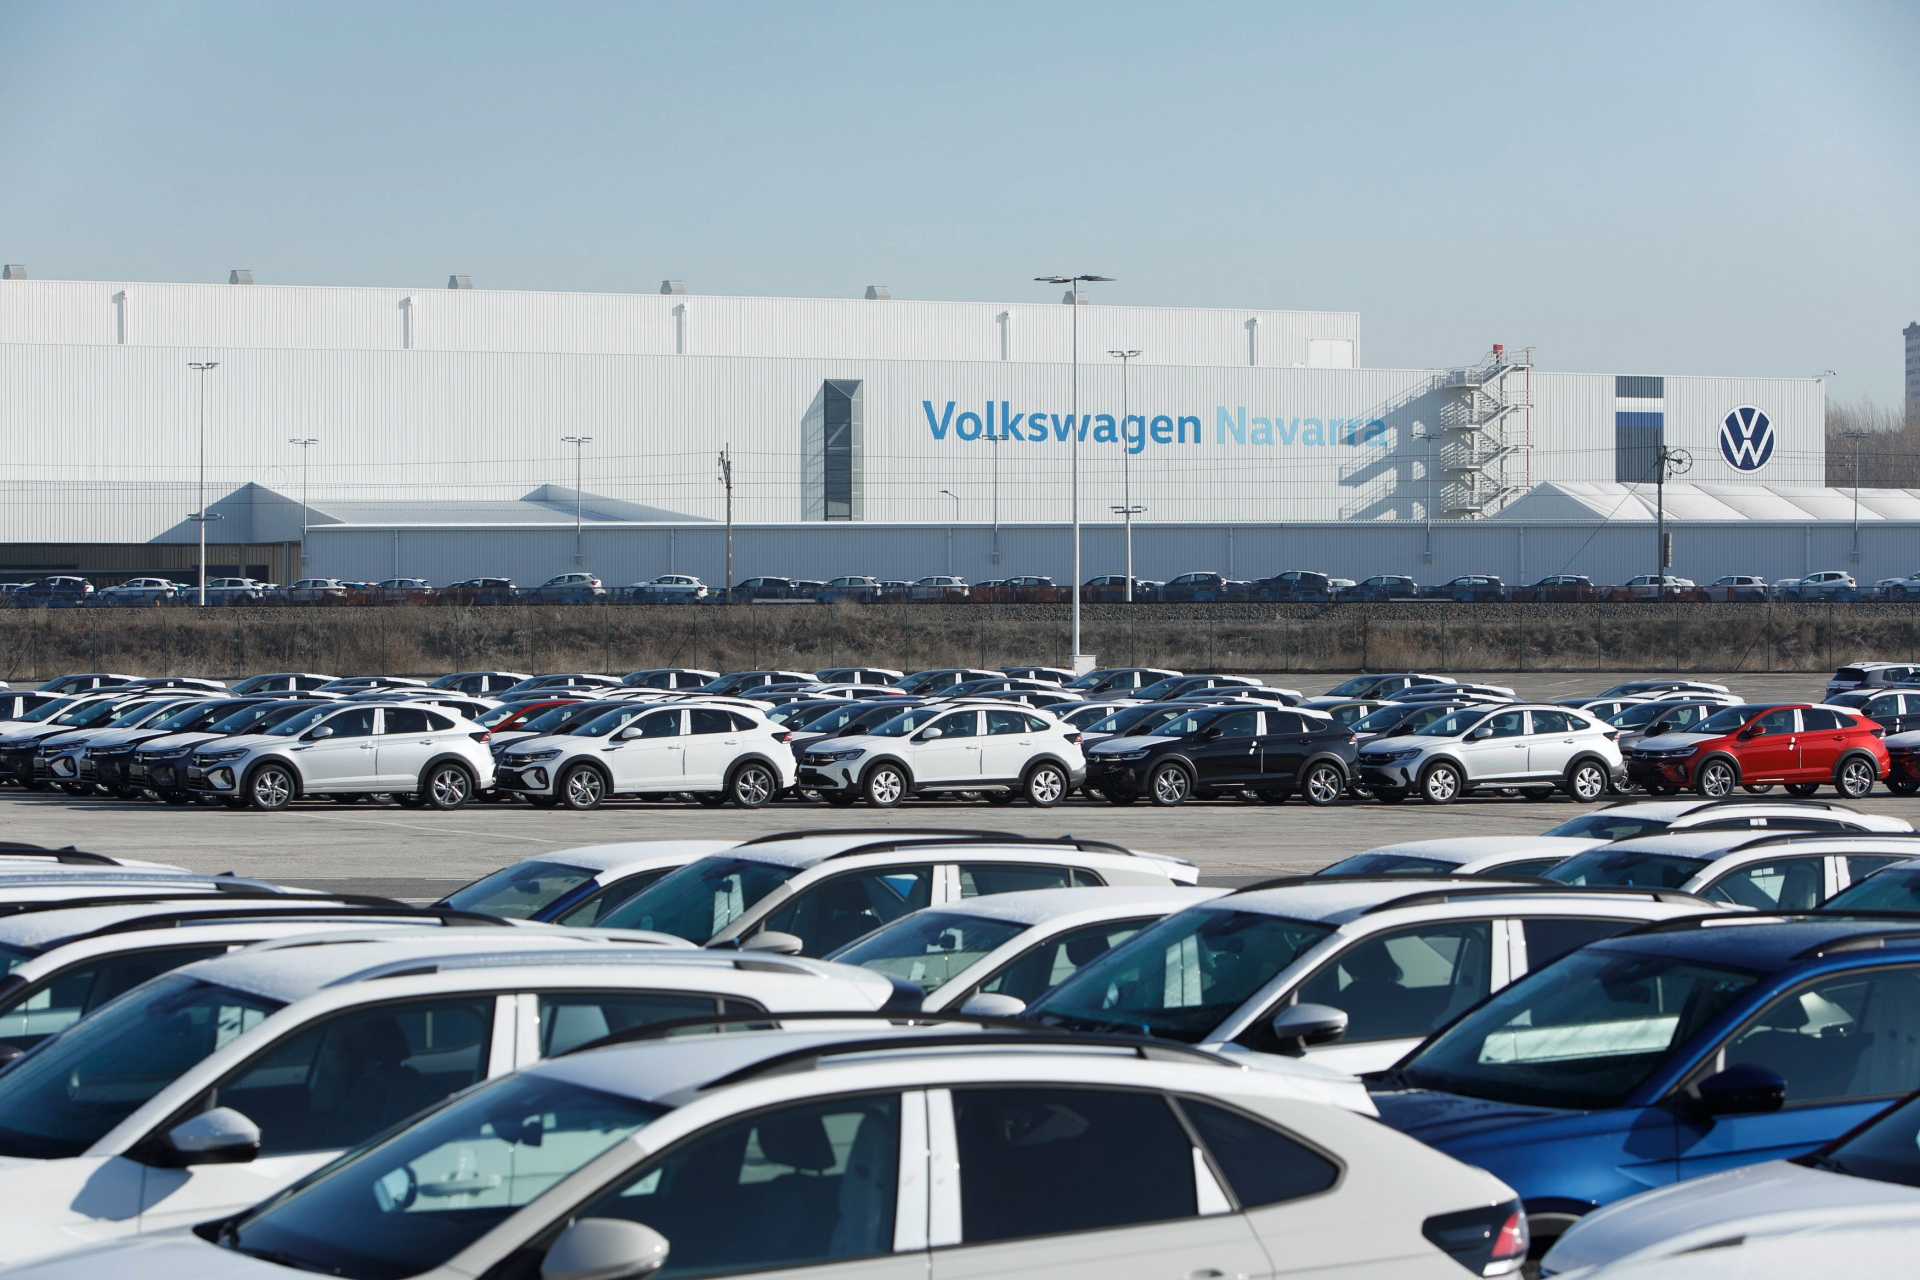 La fábrica de Volkswagen en Navarra necesitará de una remodelación para poder fabricar coches eléctricos basados en la plataforme MEB Small.